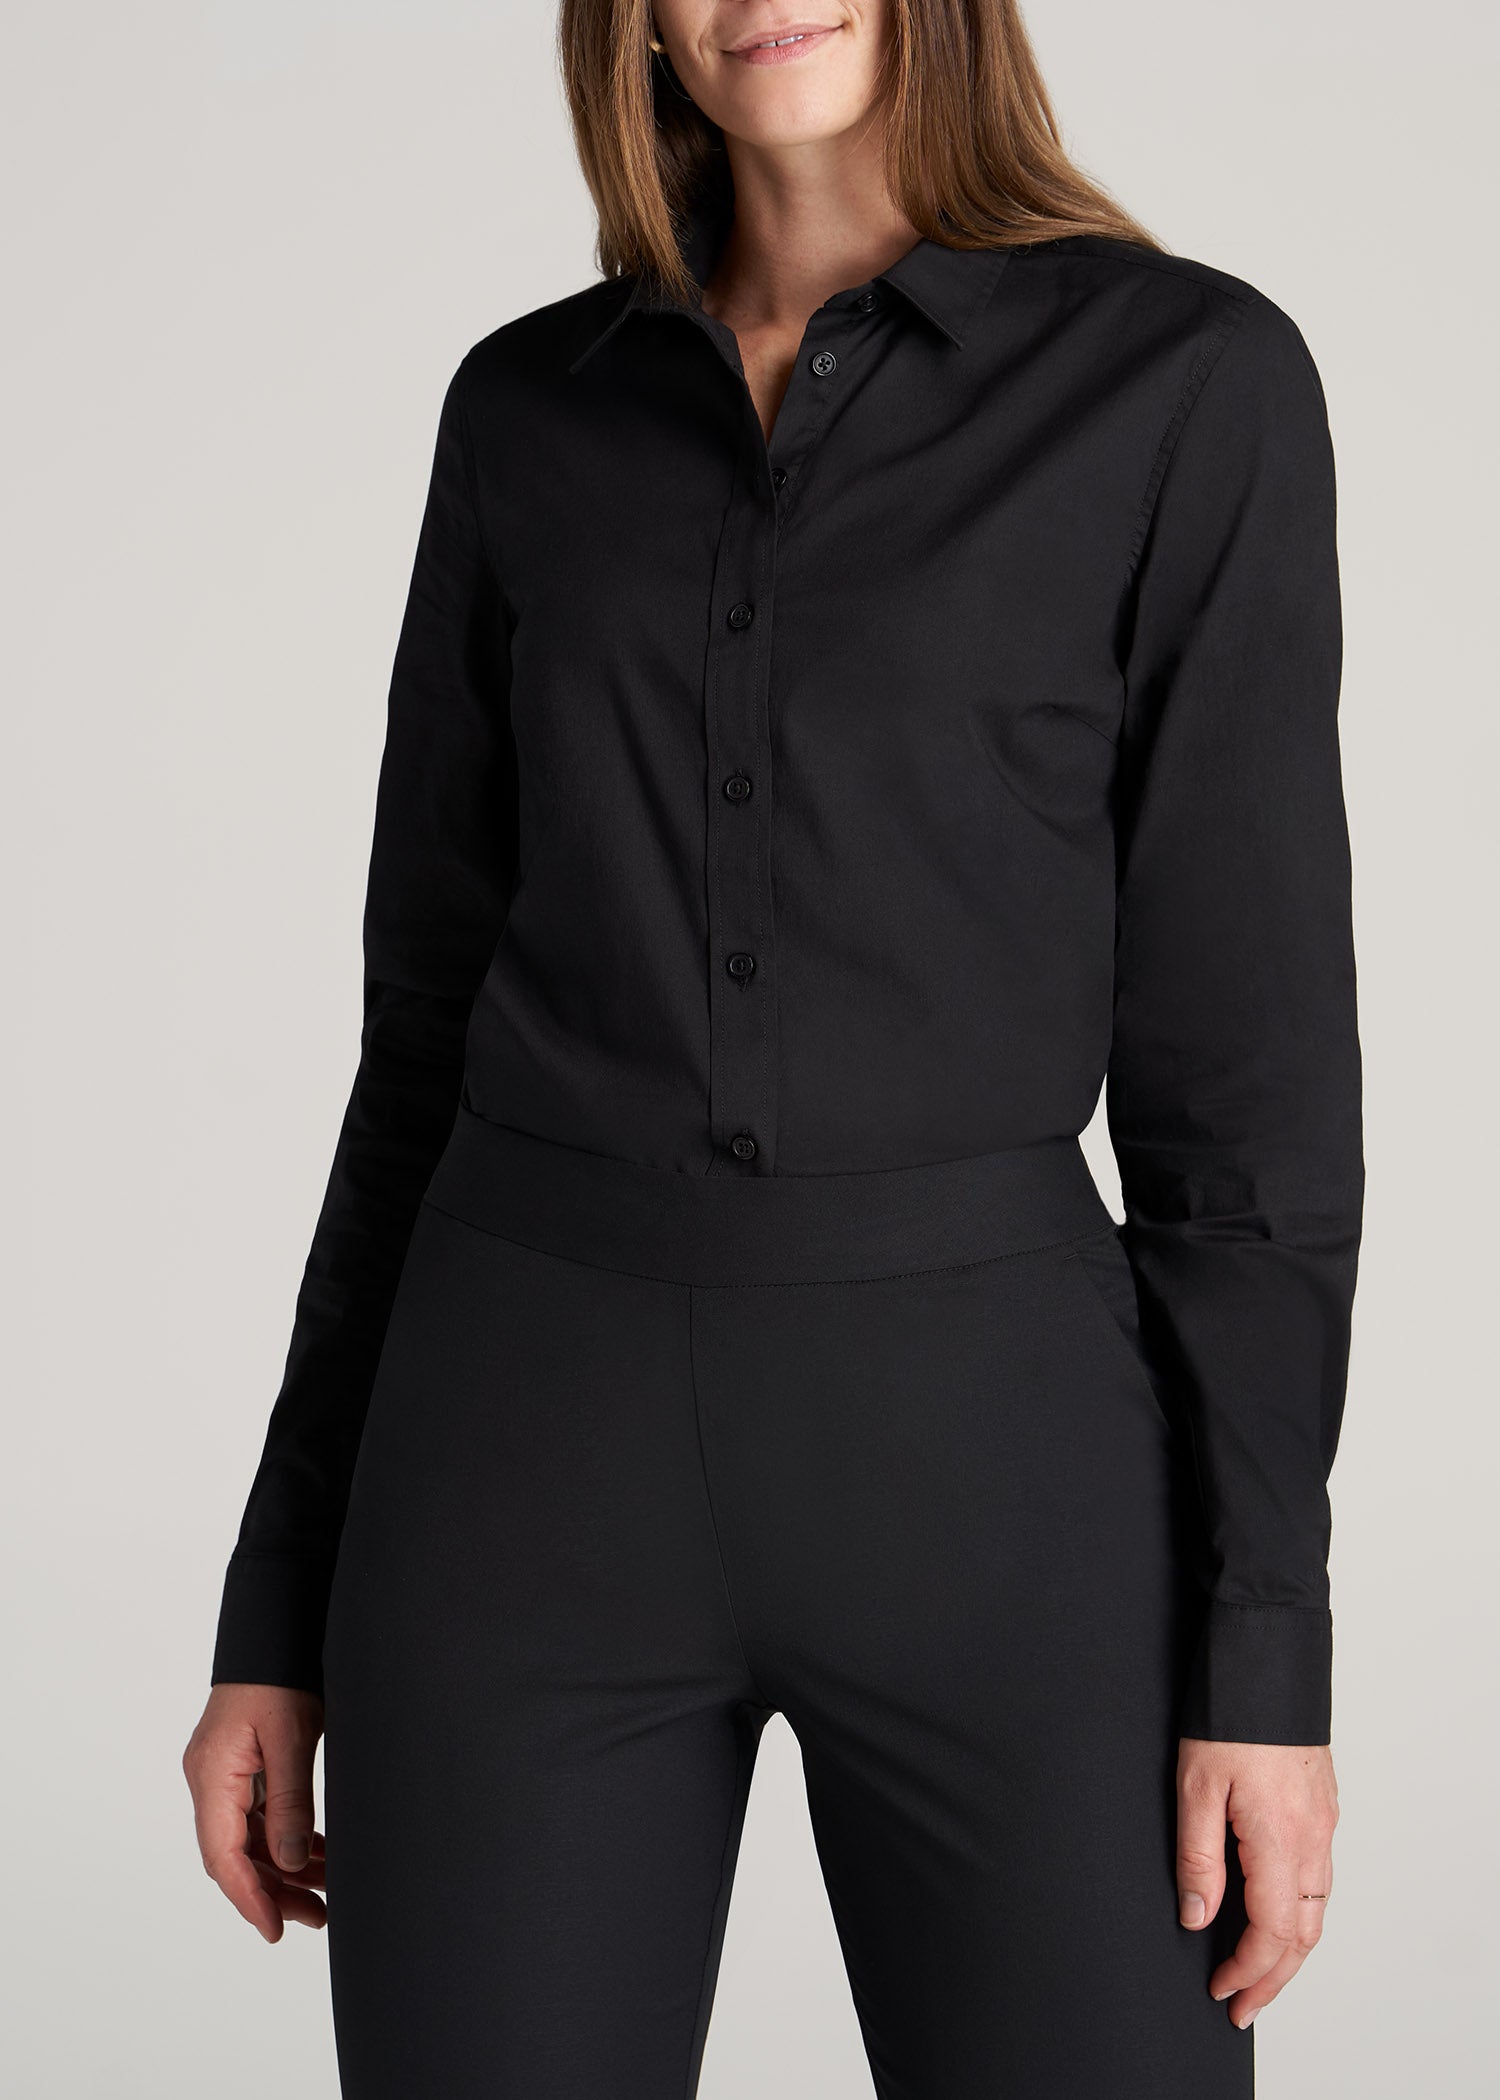       American-Tall-Women-Button-Up-Dress-Shirt-Black-front